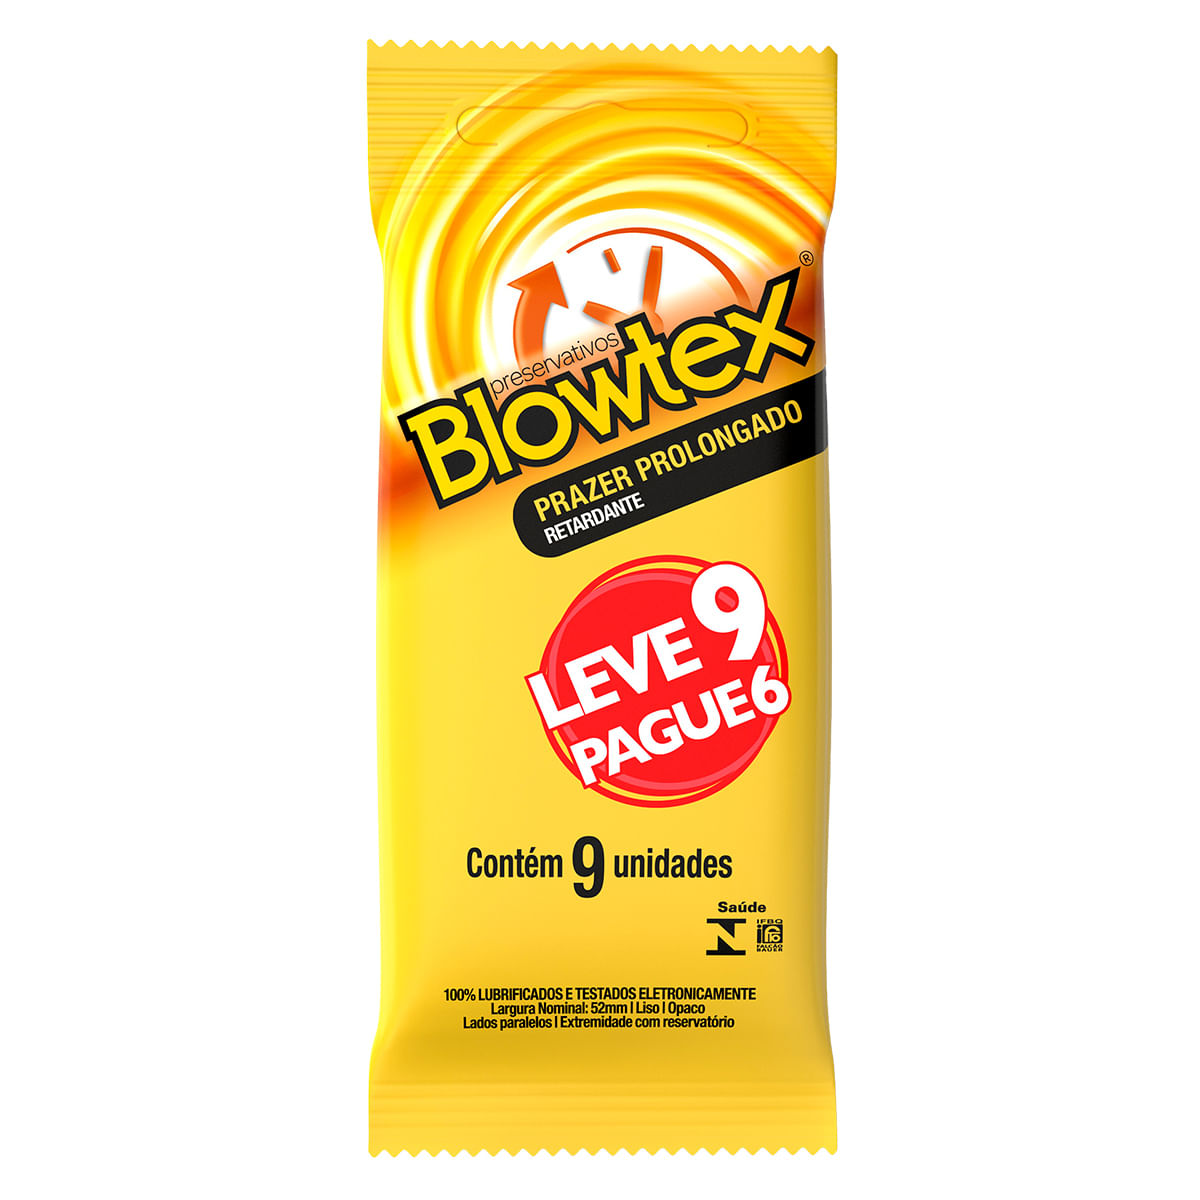 Preservativos Lubrificados Retardante Prazer Prolongado Leve 9 Pague 6 unidades Blowtex